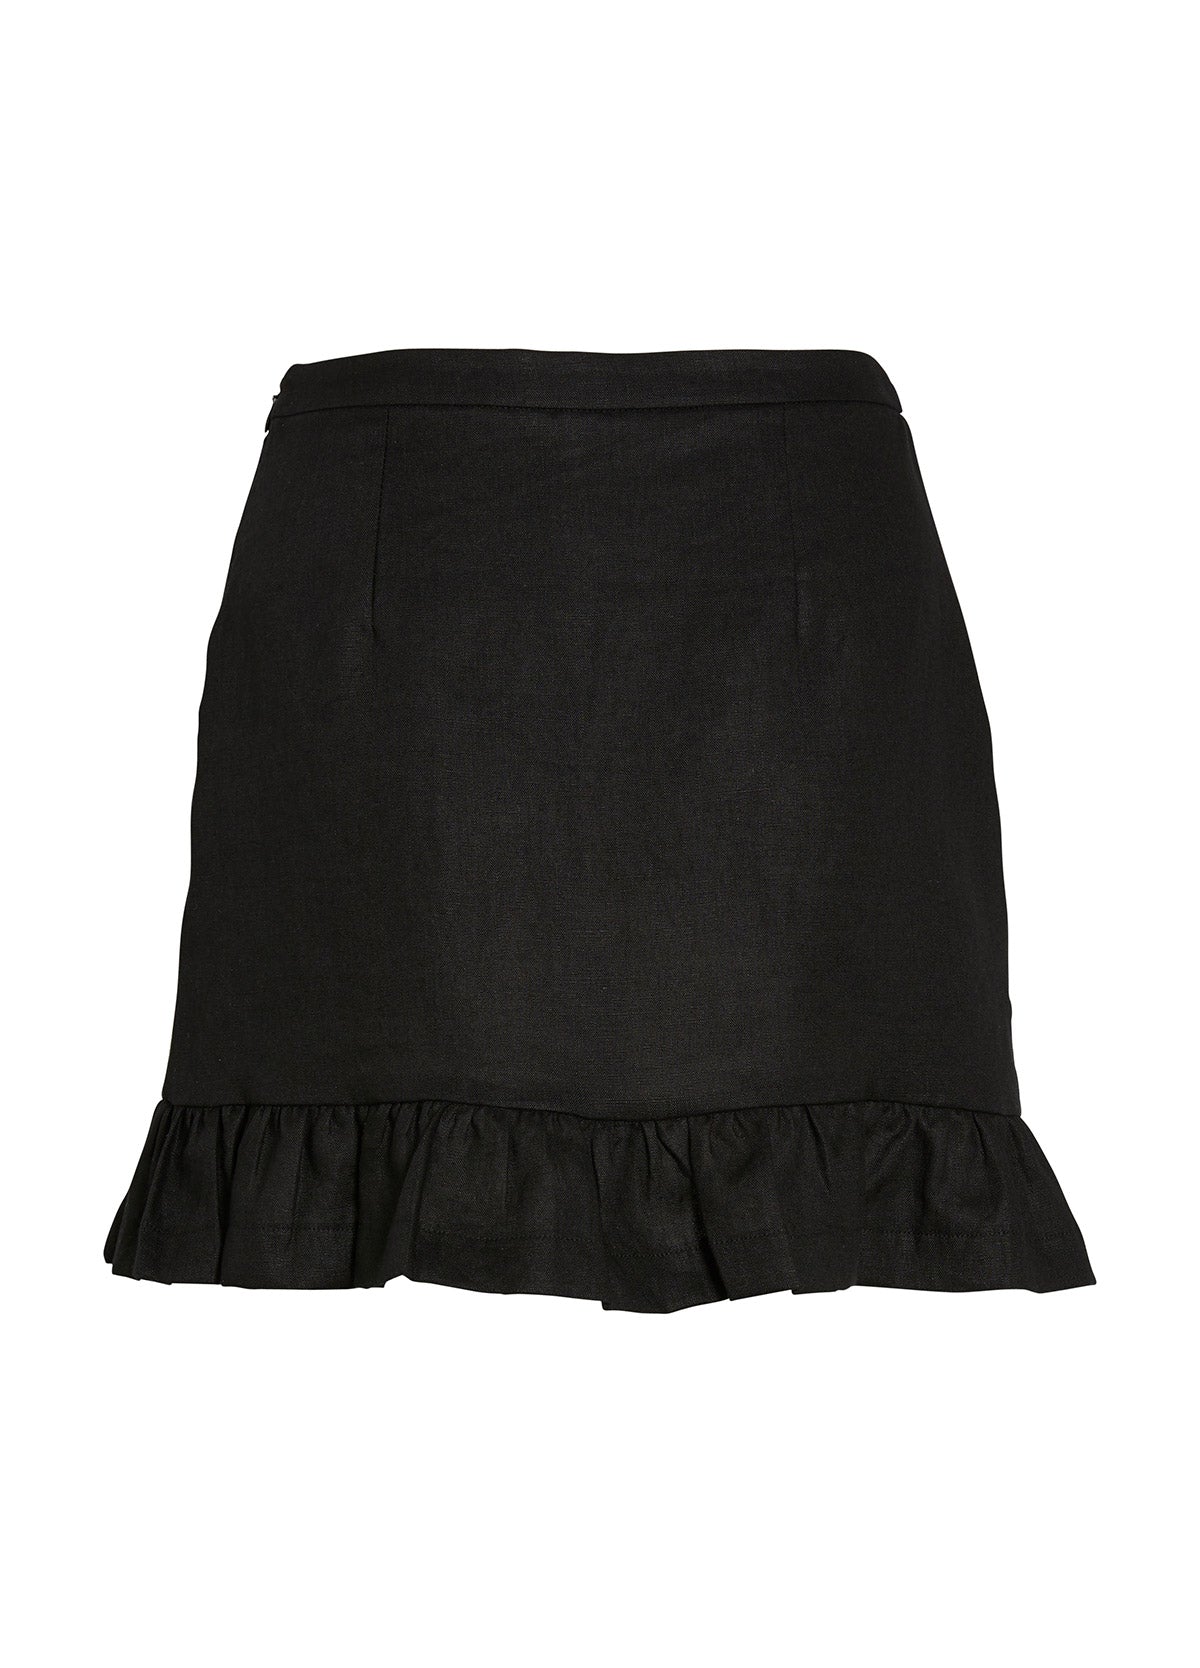 Marlin Skirt - Black – White By FTL